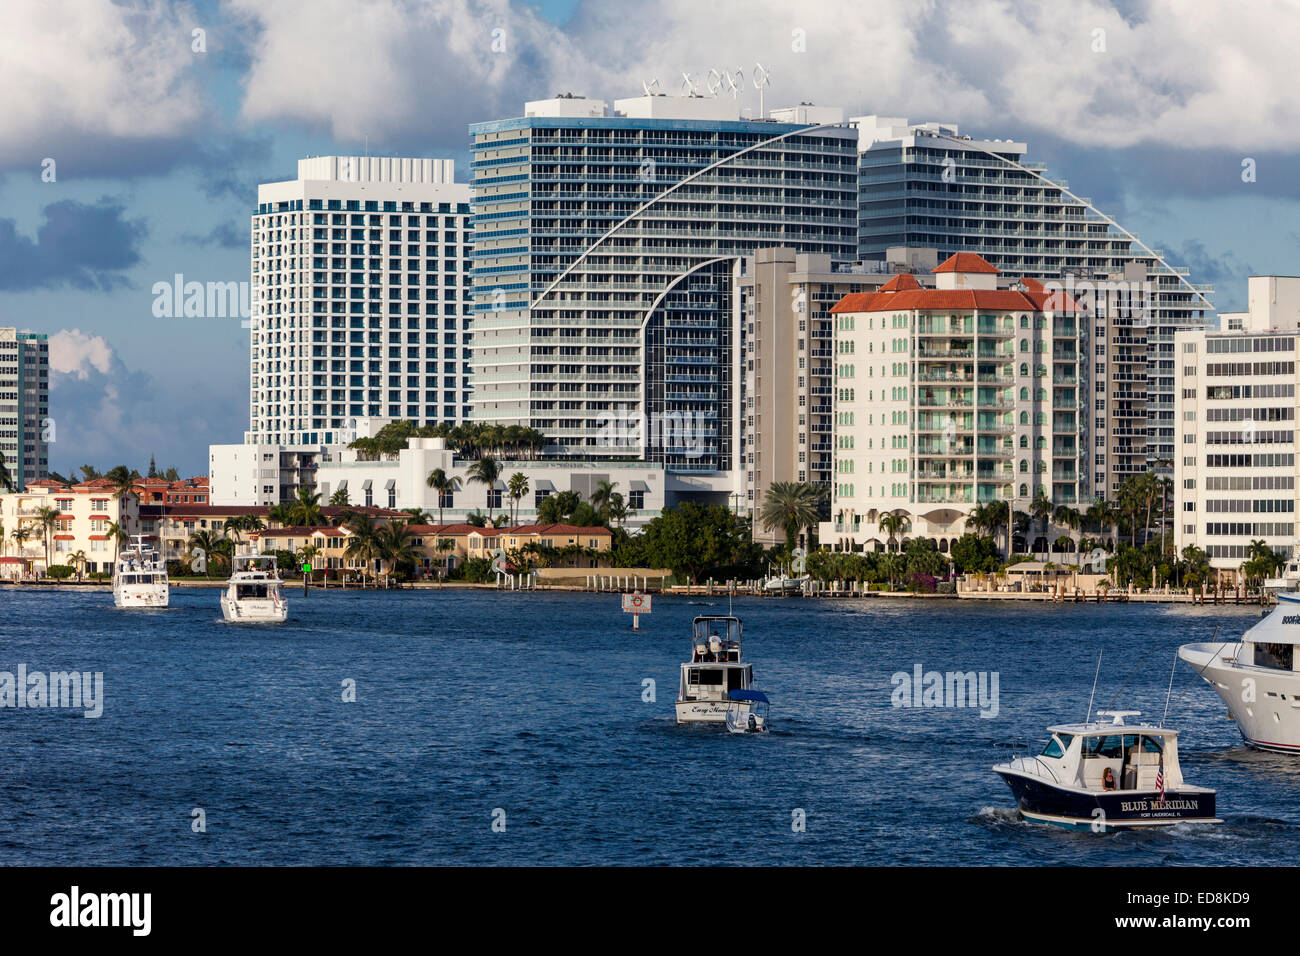 Ft. Lauderdale, en Floride. Dimanche après-midi, les bateaux de plaisance sur l'Intracoastal Waterway. Hôtel W dans le centre. Banque D'Images